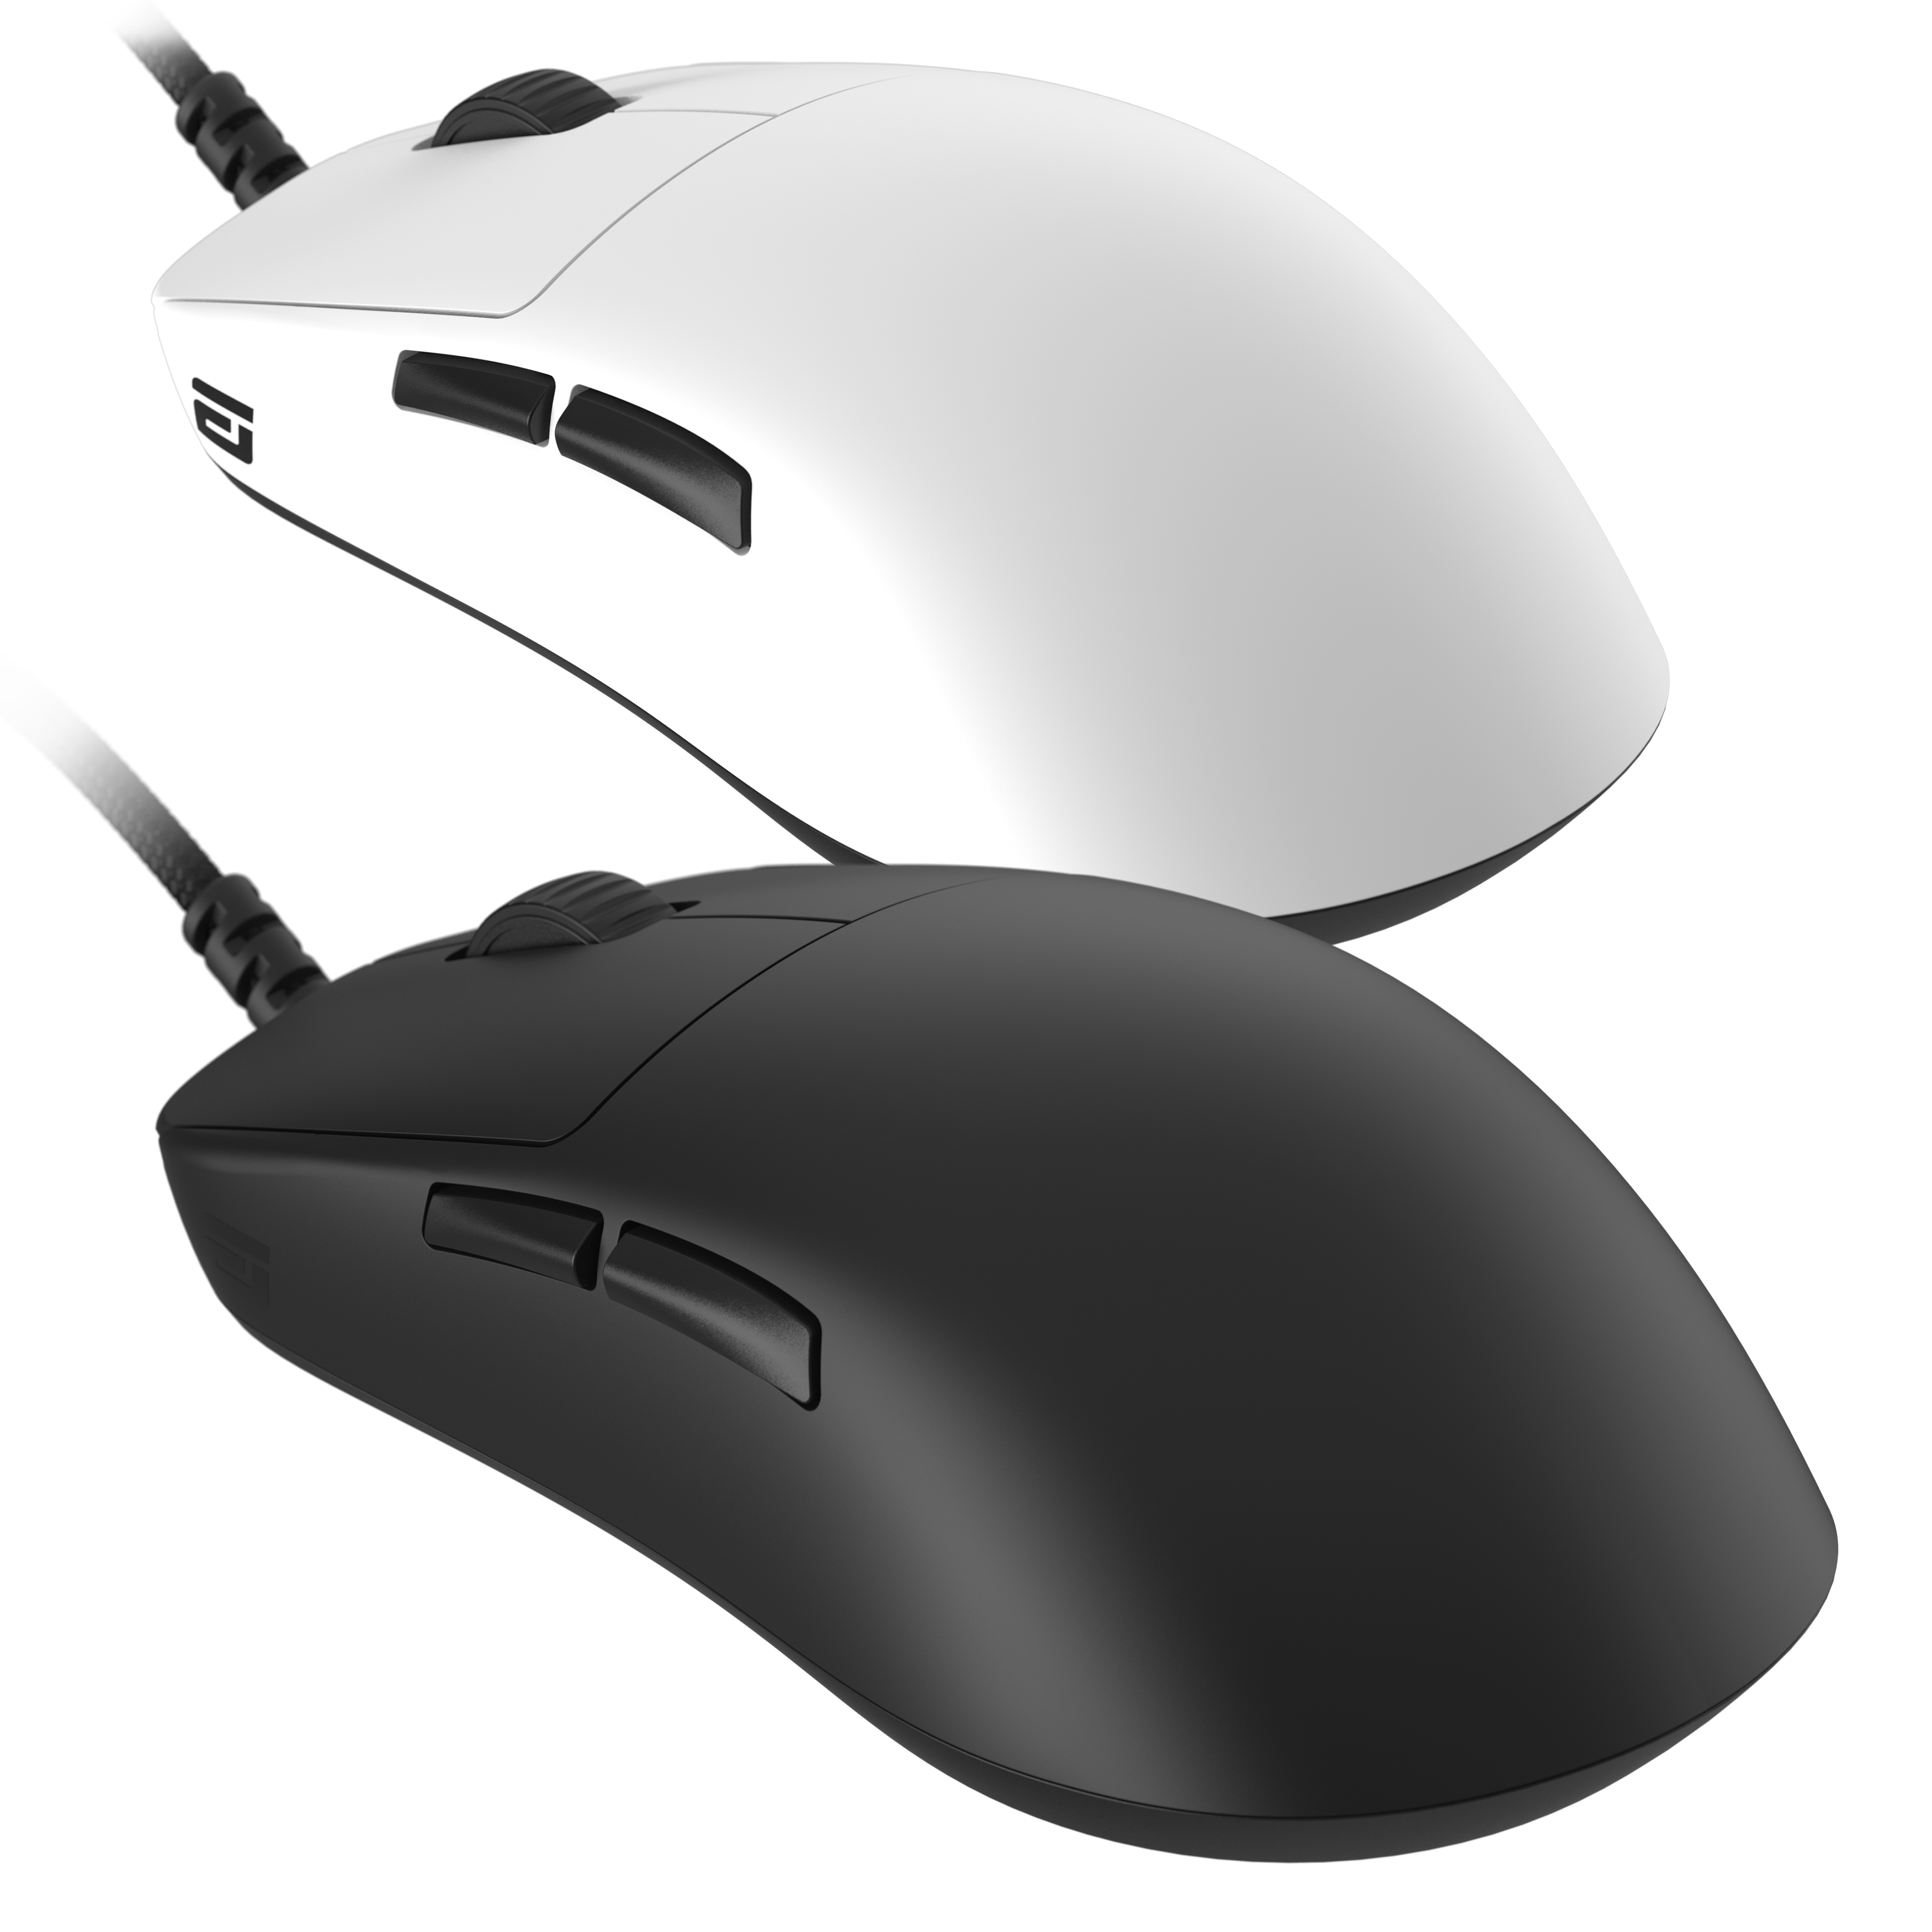 Endgame Gear Gaming Mouse OP1 8k em Preto ou Branco